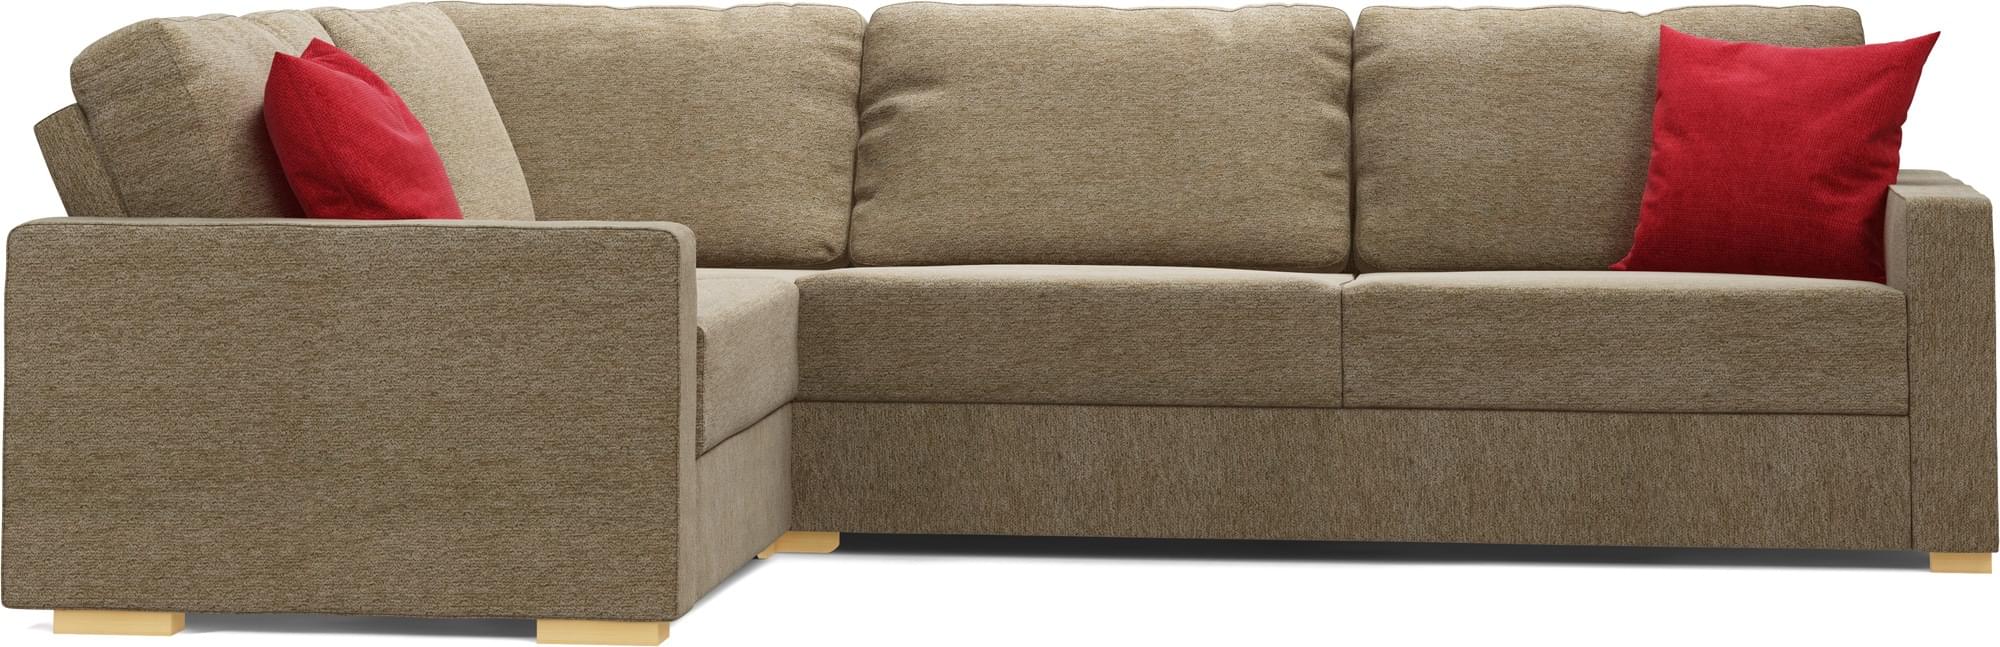 Koi 3X2 Corner Sofa